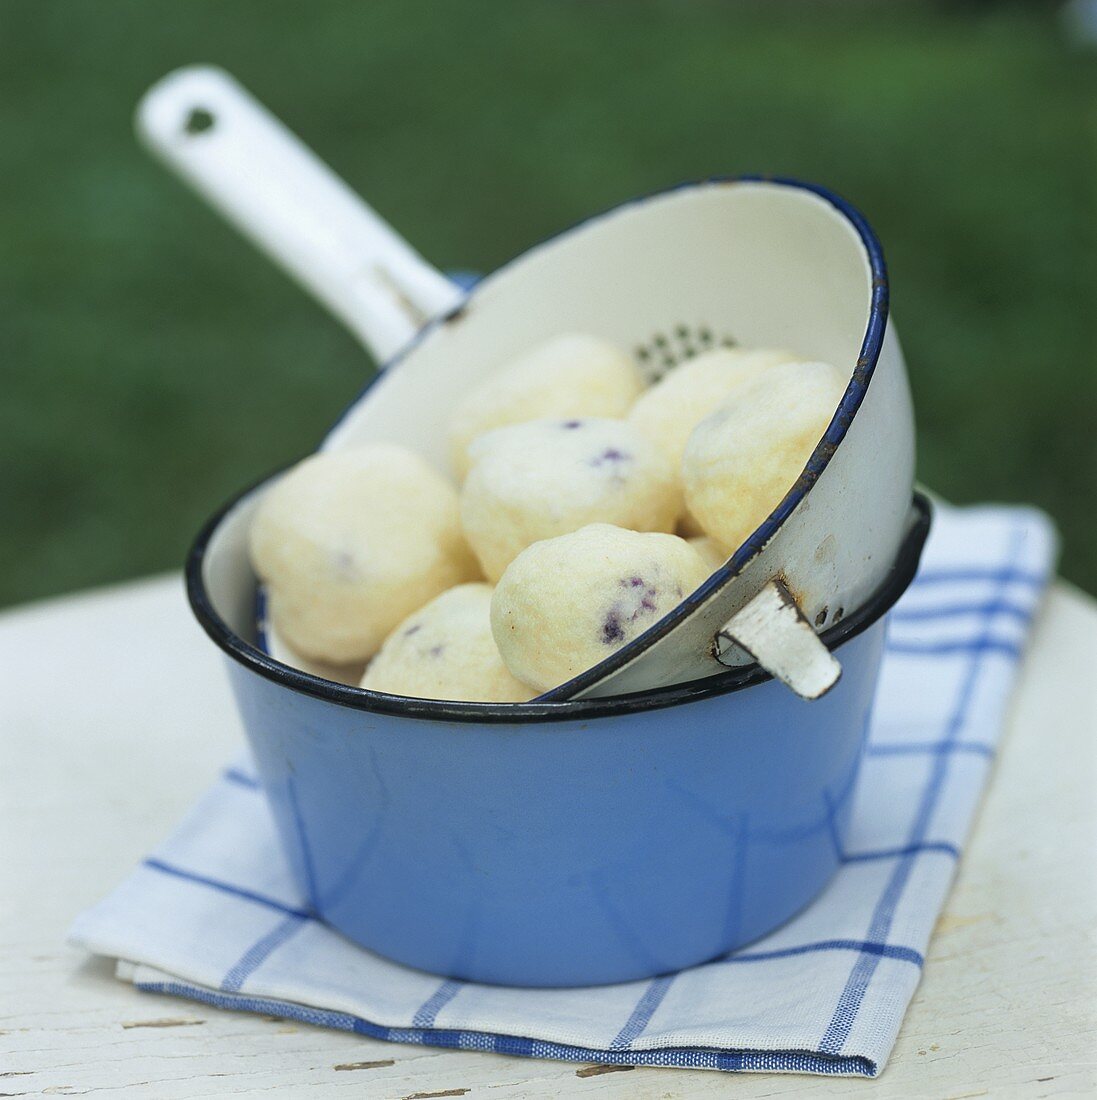 Blueberry dumplings in a strainer